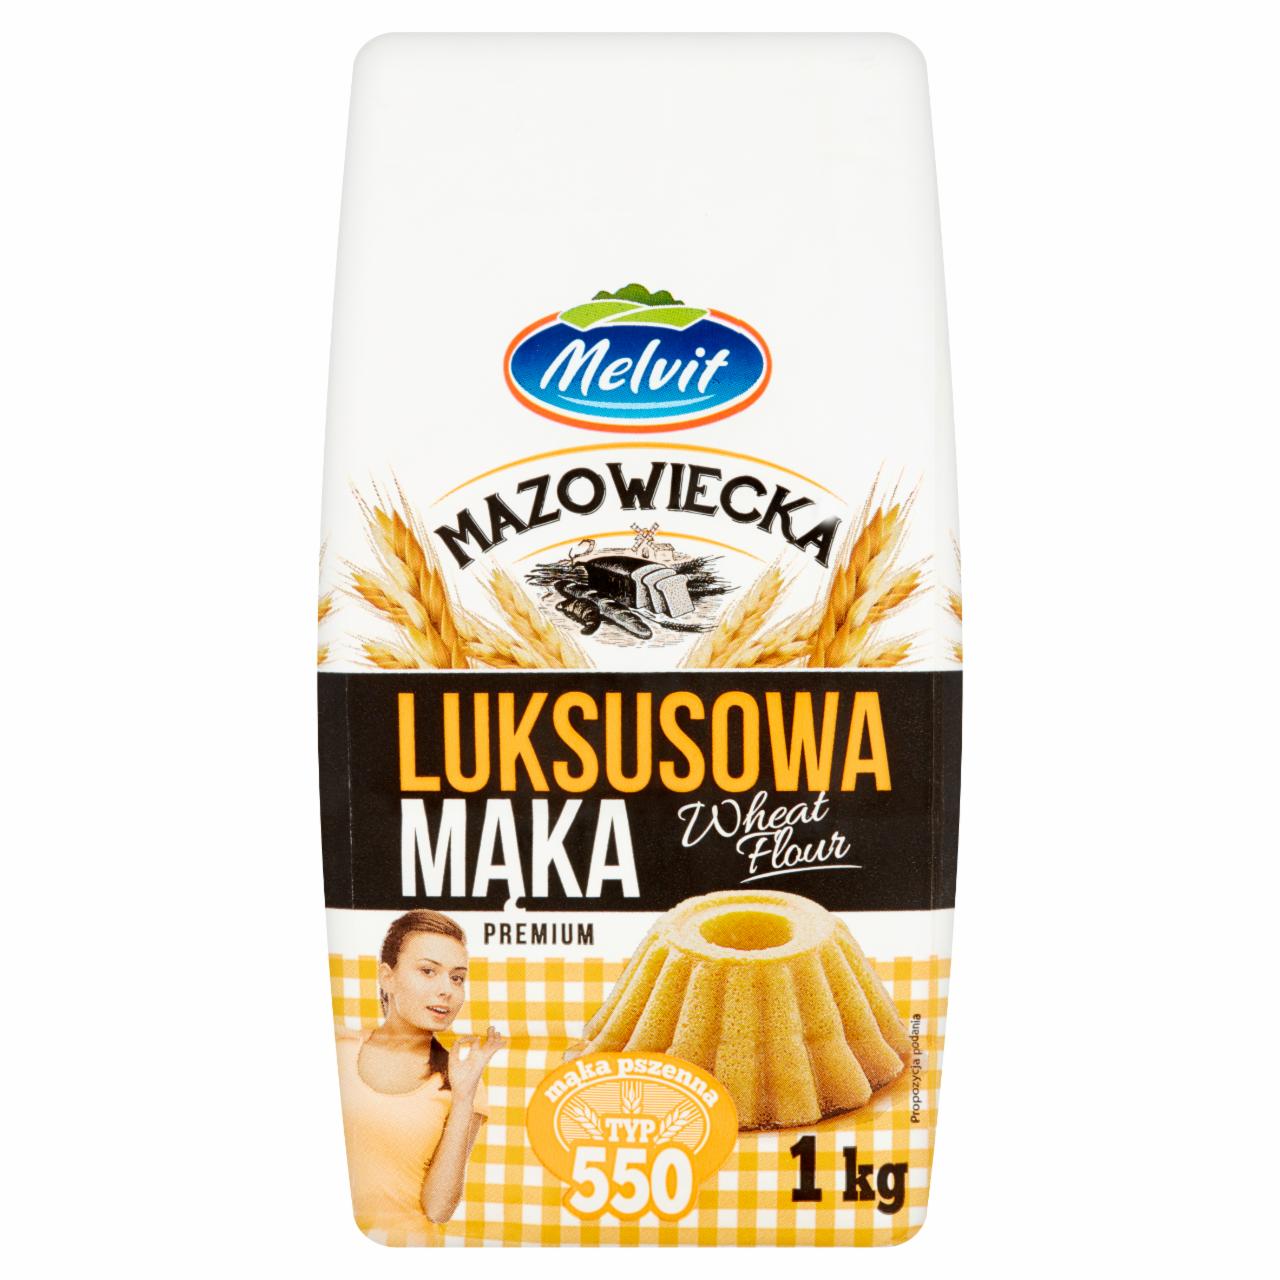 Zdjęcia - Melvit Mazowiecka Mąka luksusowa pszenna typ 550 1 kg